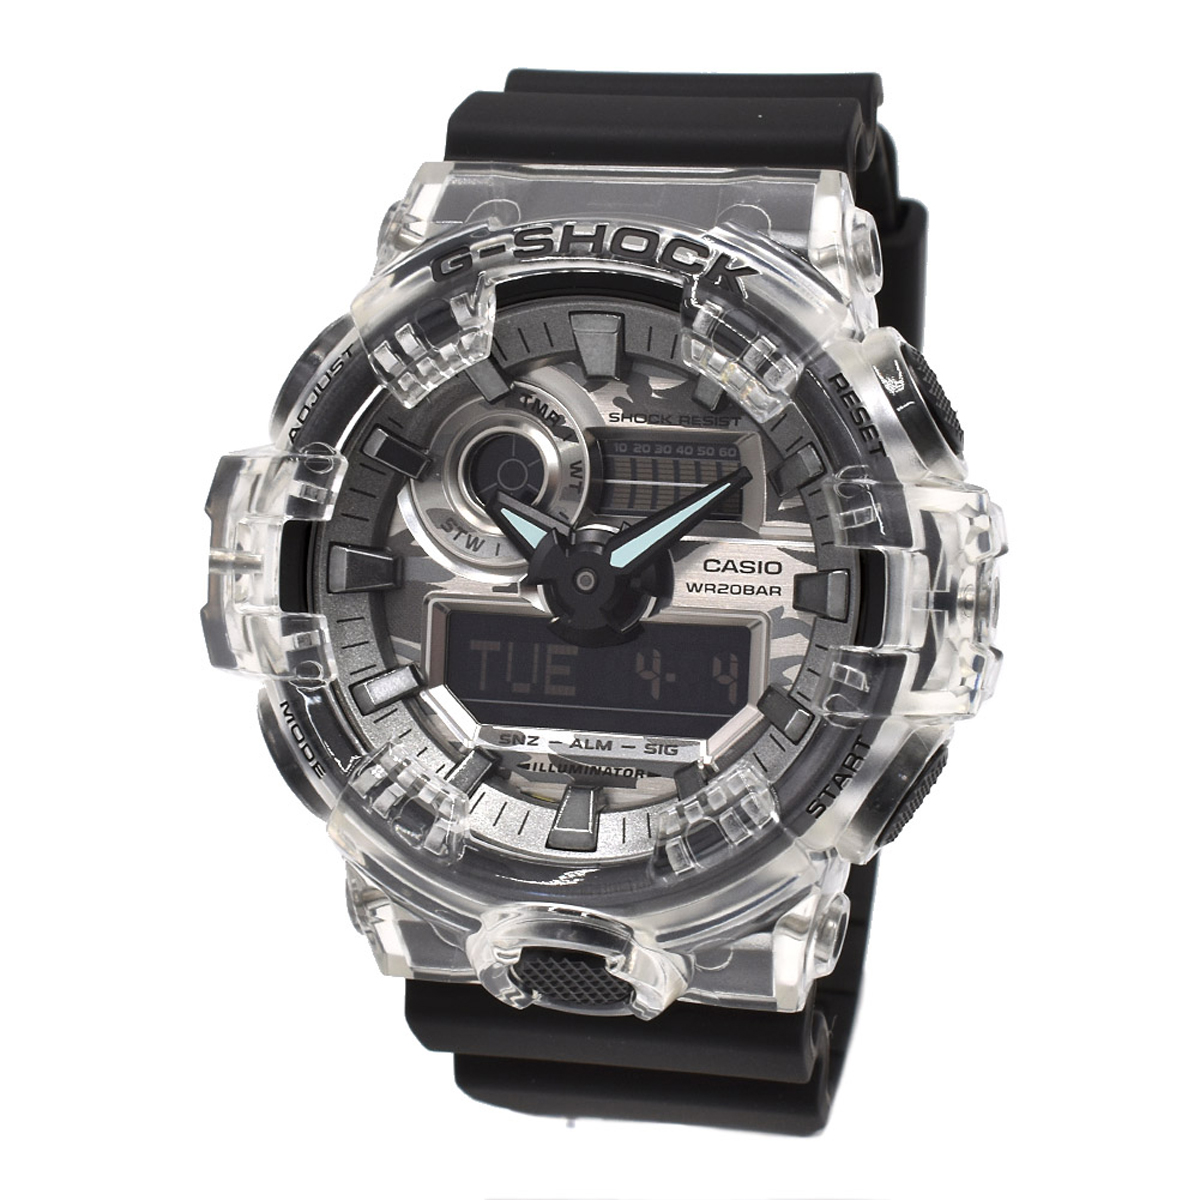 カシオ CASIO 腕時計 G-SHOCK Gショック GA-700SKC-1A ANALOG-DIGITAL GA-700 アナデジ メンズ シルバー+グレー+ブラック 海外正規品腕時